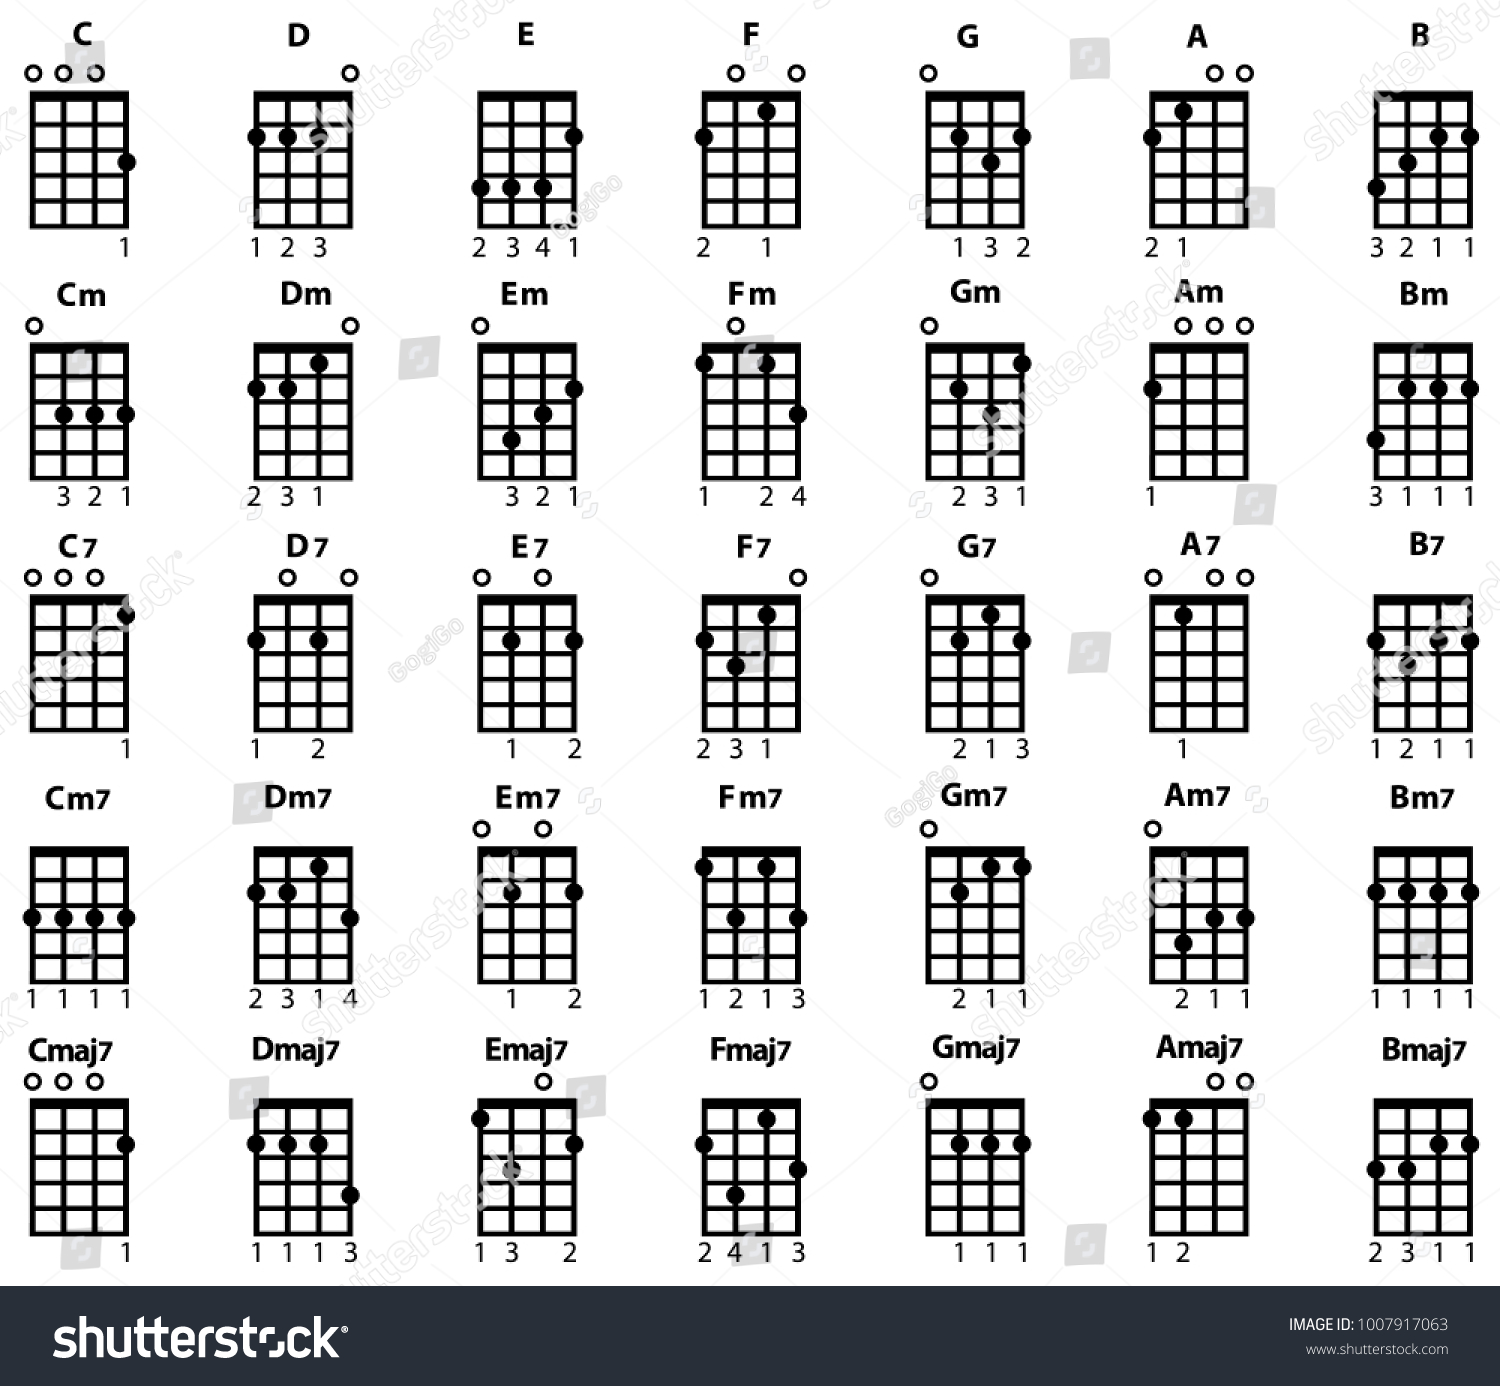 Ukulele Chord Finger Chart